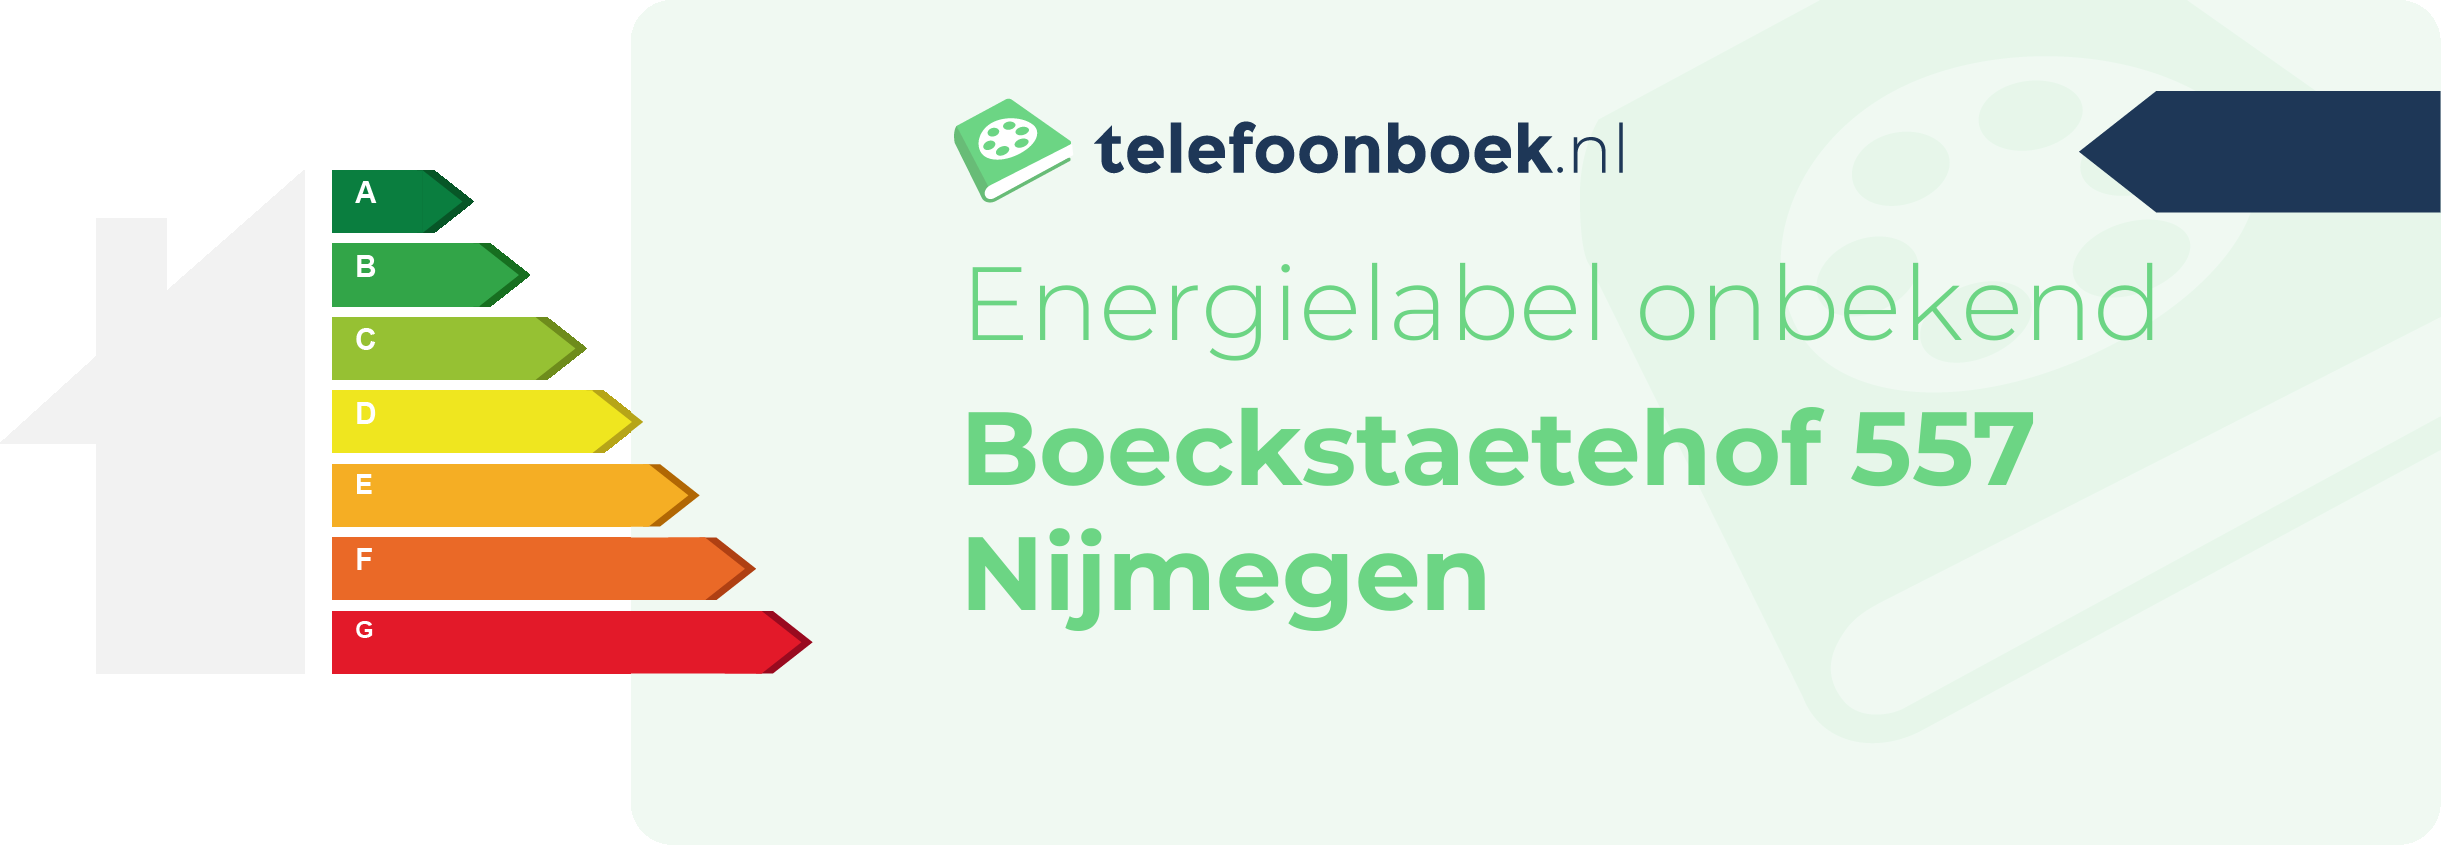 Energielabel Boeckstaetehof 557 Nijmegen